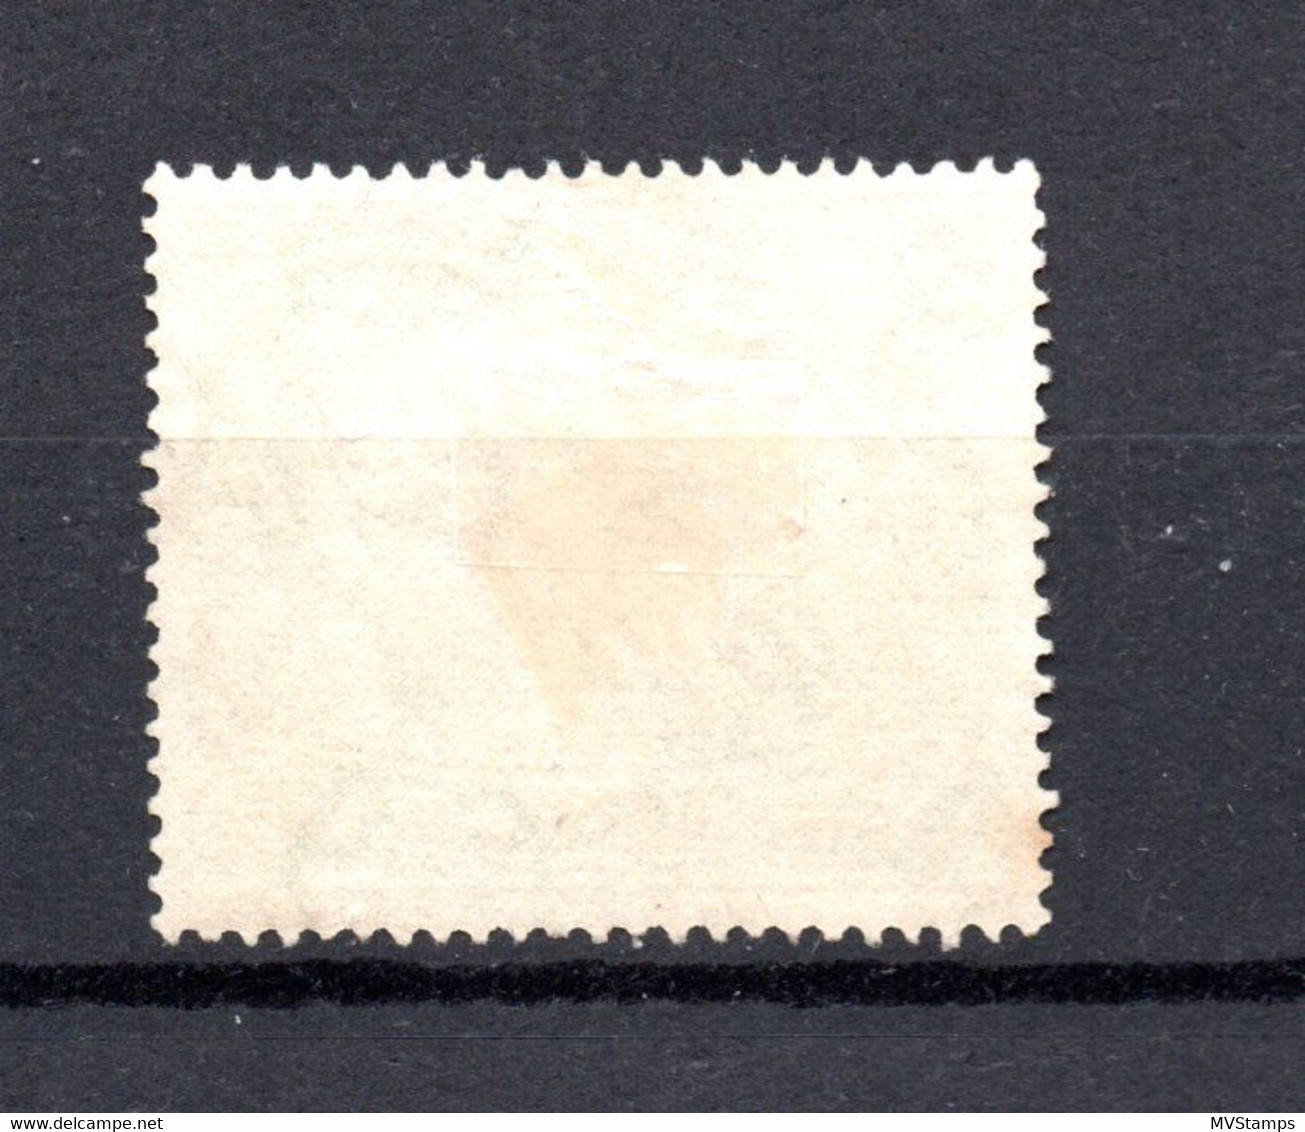 Malaya States 1926 Old $1.00 Stamp (Michel 74) Nice Used - Fédération De Malaya